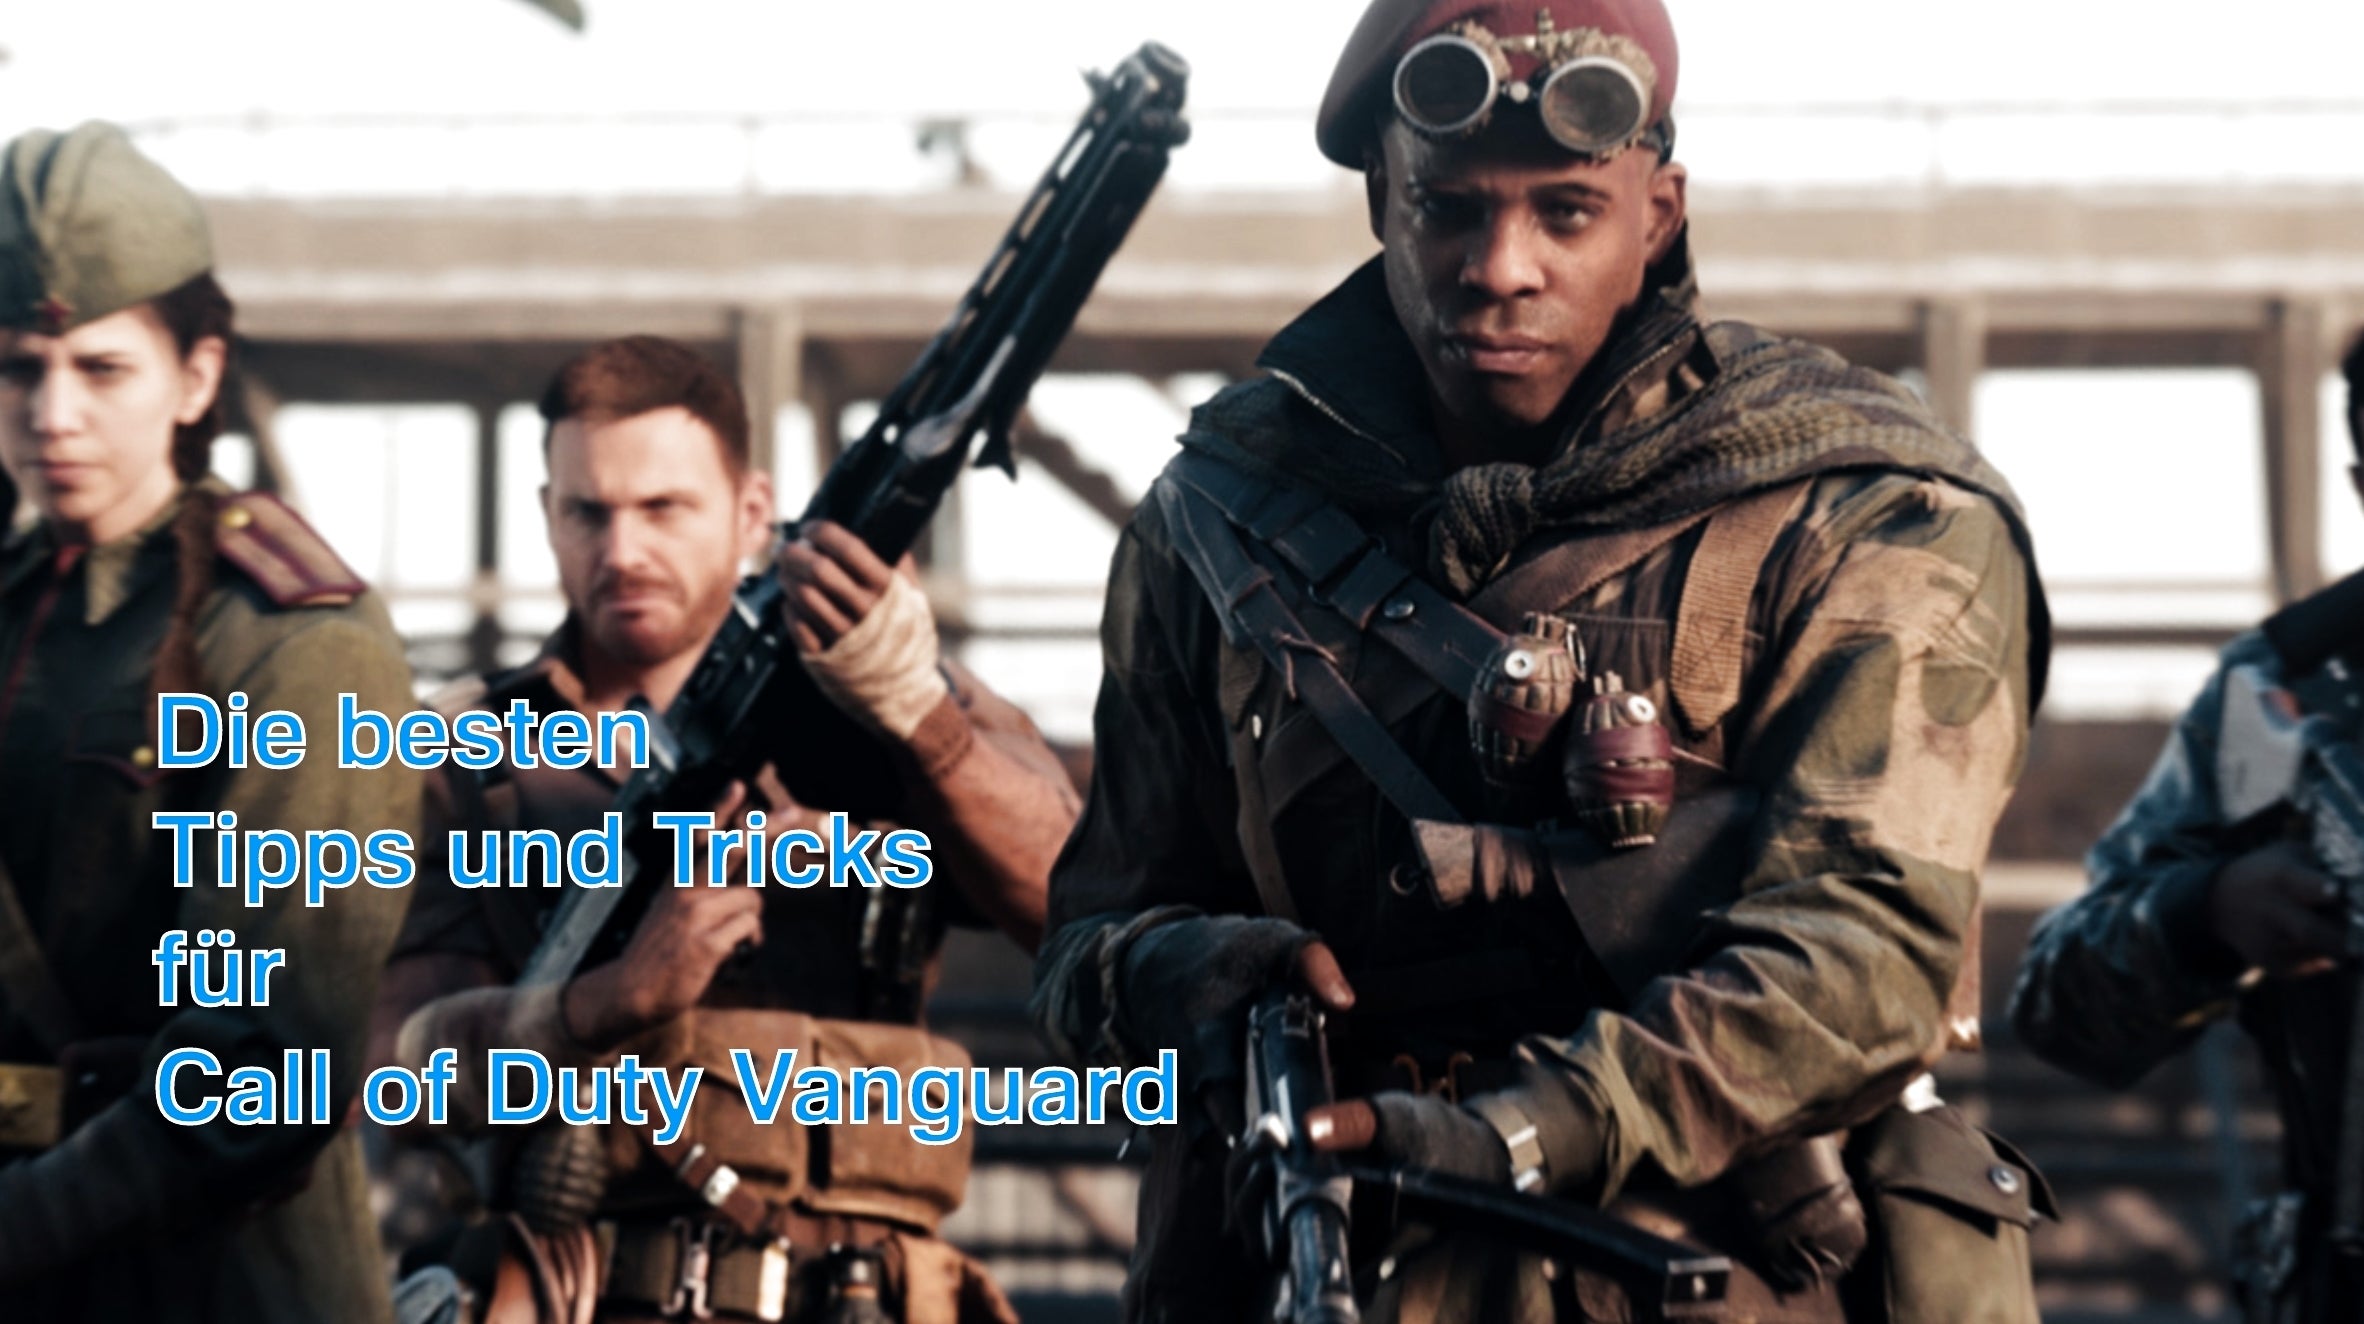 Bilder zu Call of Duty Vanguard - Tipps und Tricks für Waffen, Ausrüstung und Multiplayer